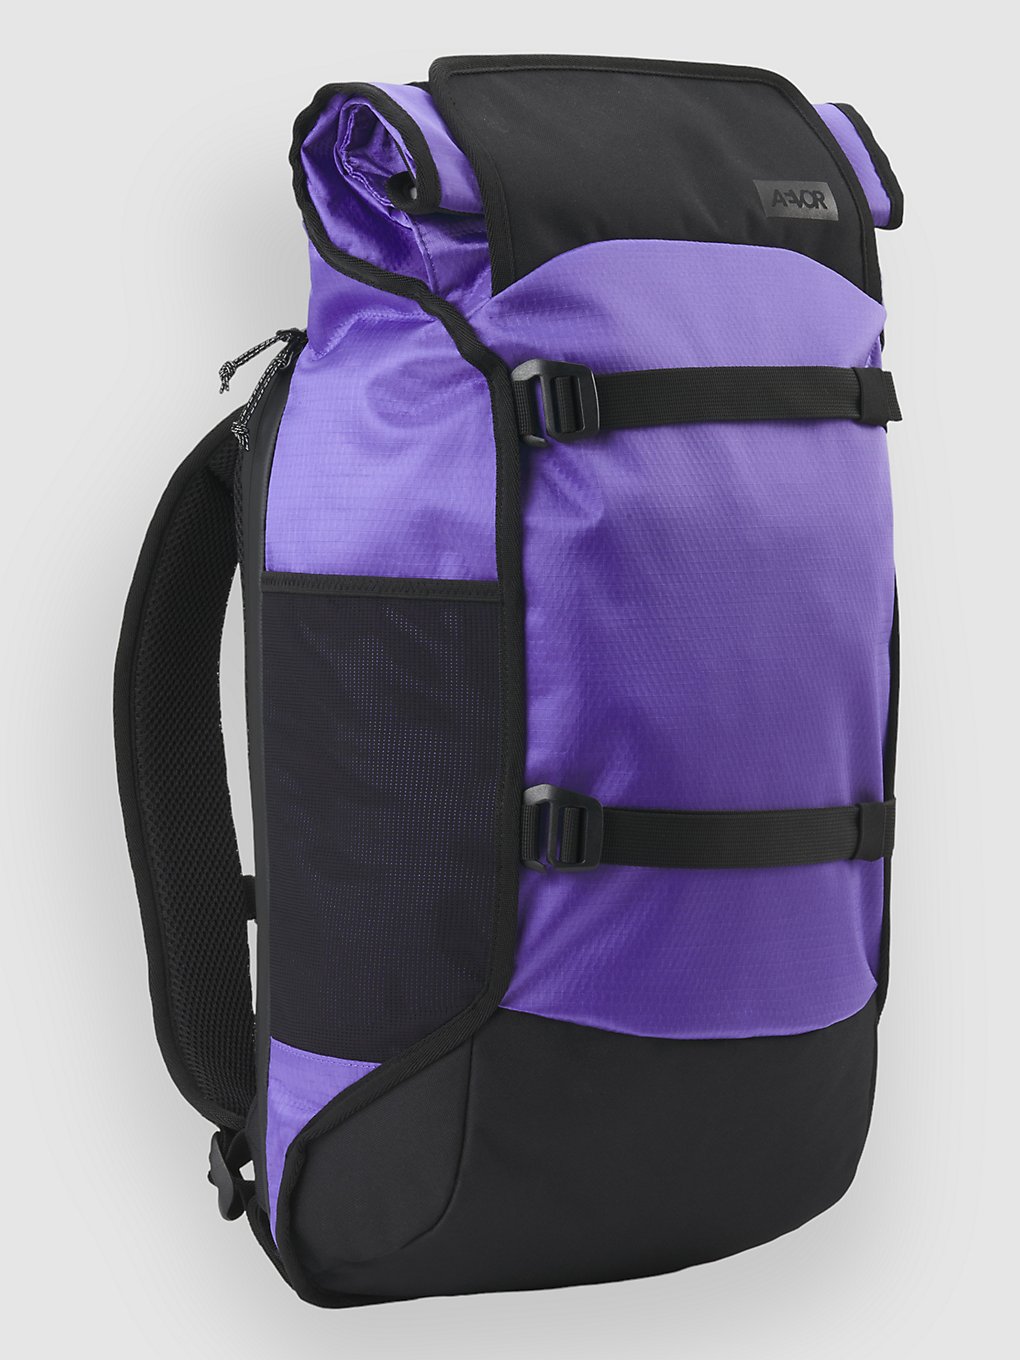 AEVOR Trip Rucksack proof purple kaufen